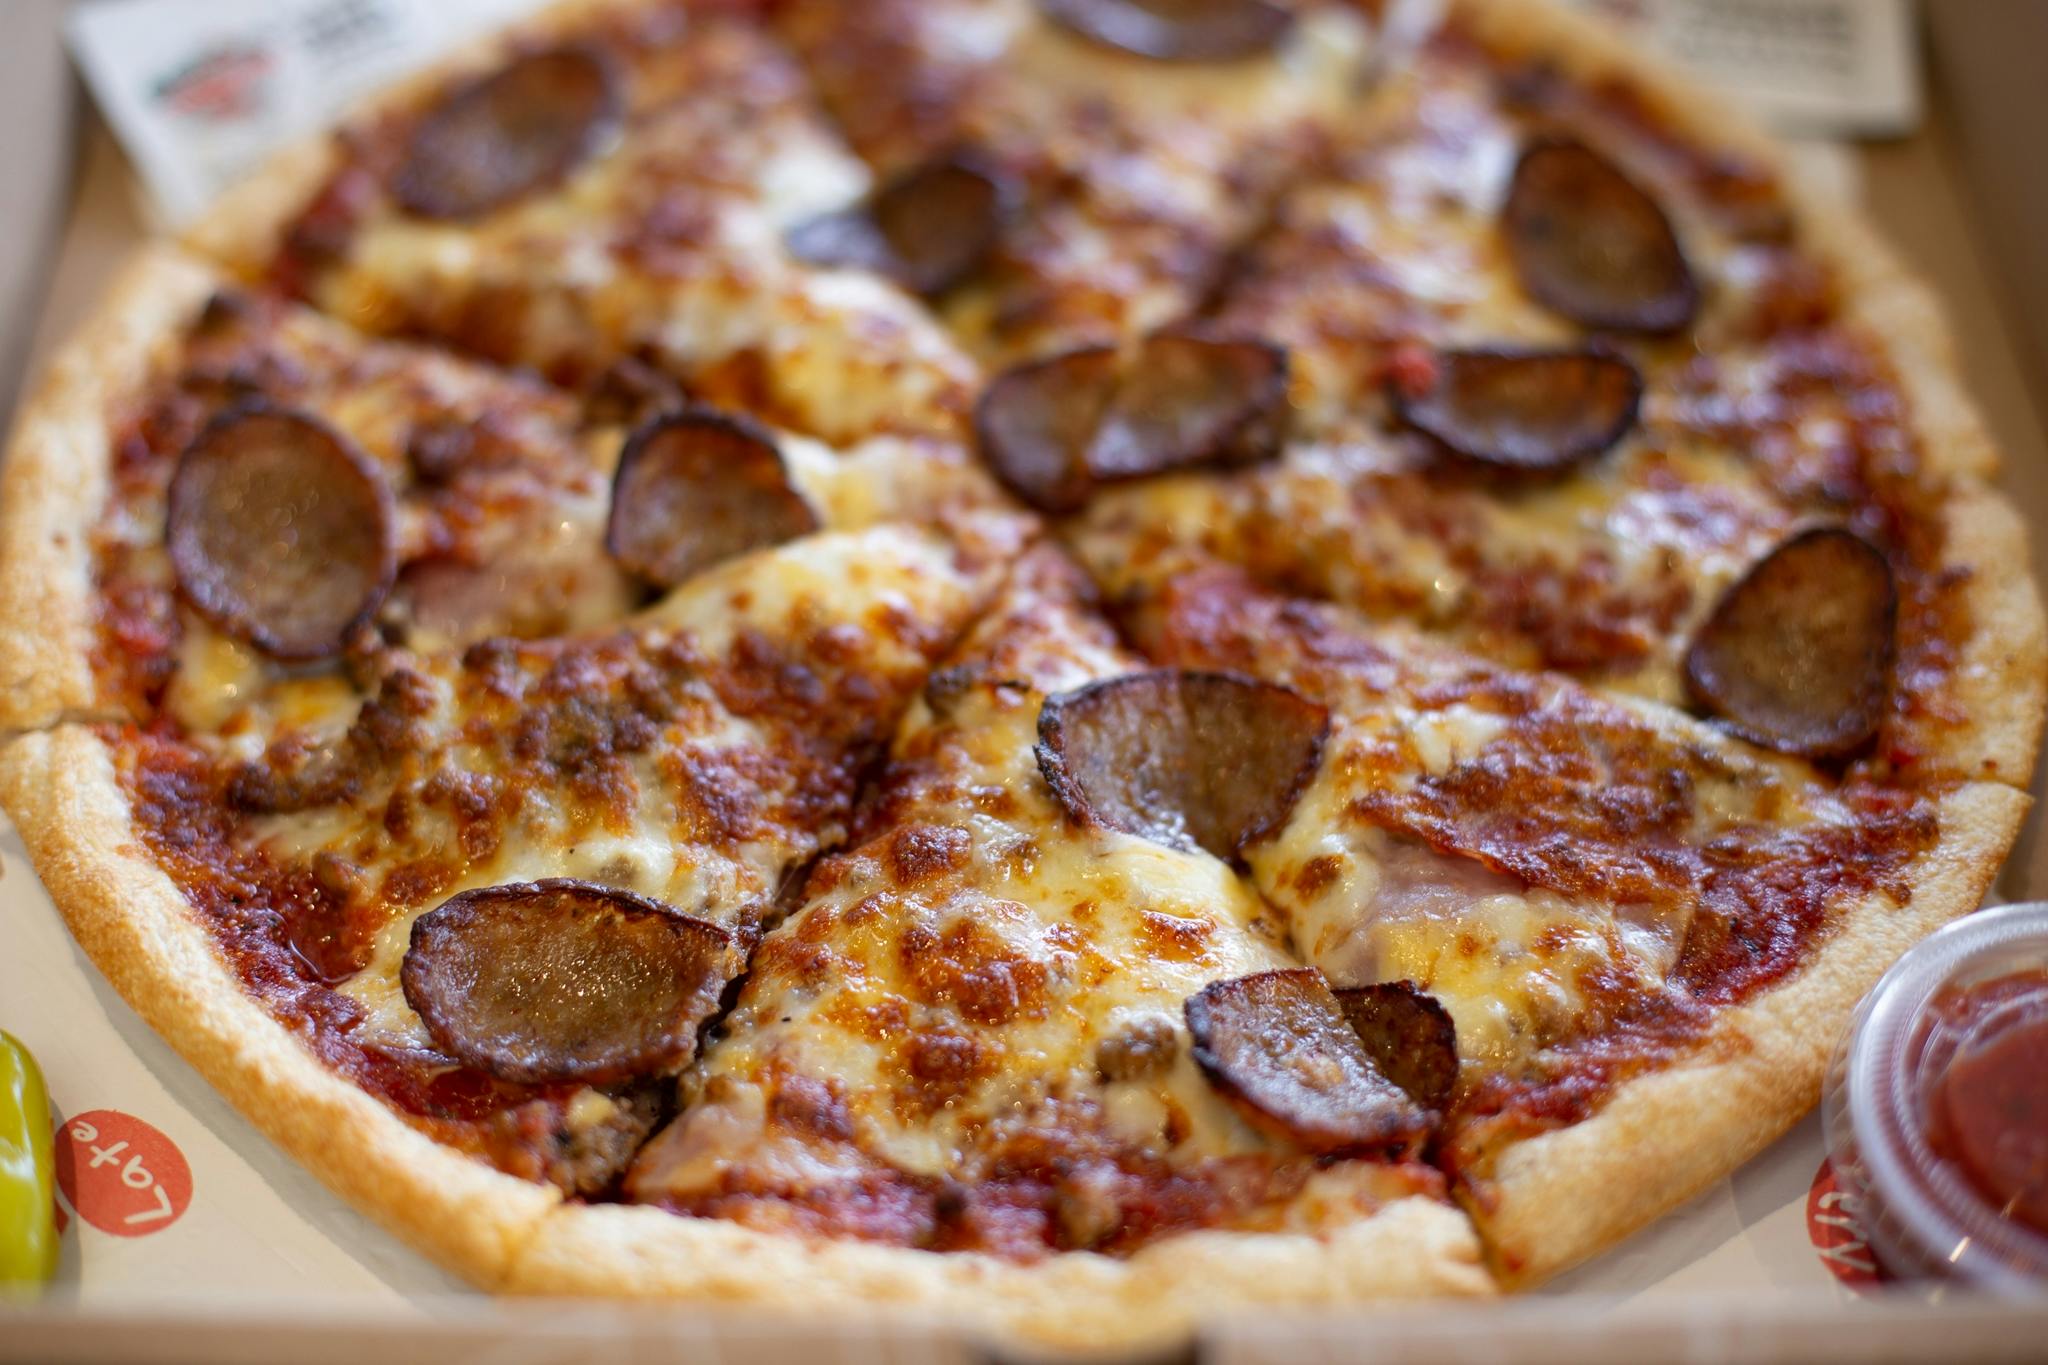 New York Deli Pizza from Sarpino's Pizzeria - Montrose in Chicago, IL